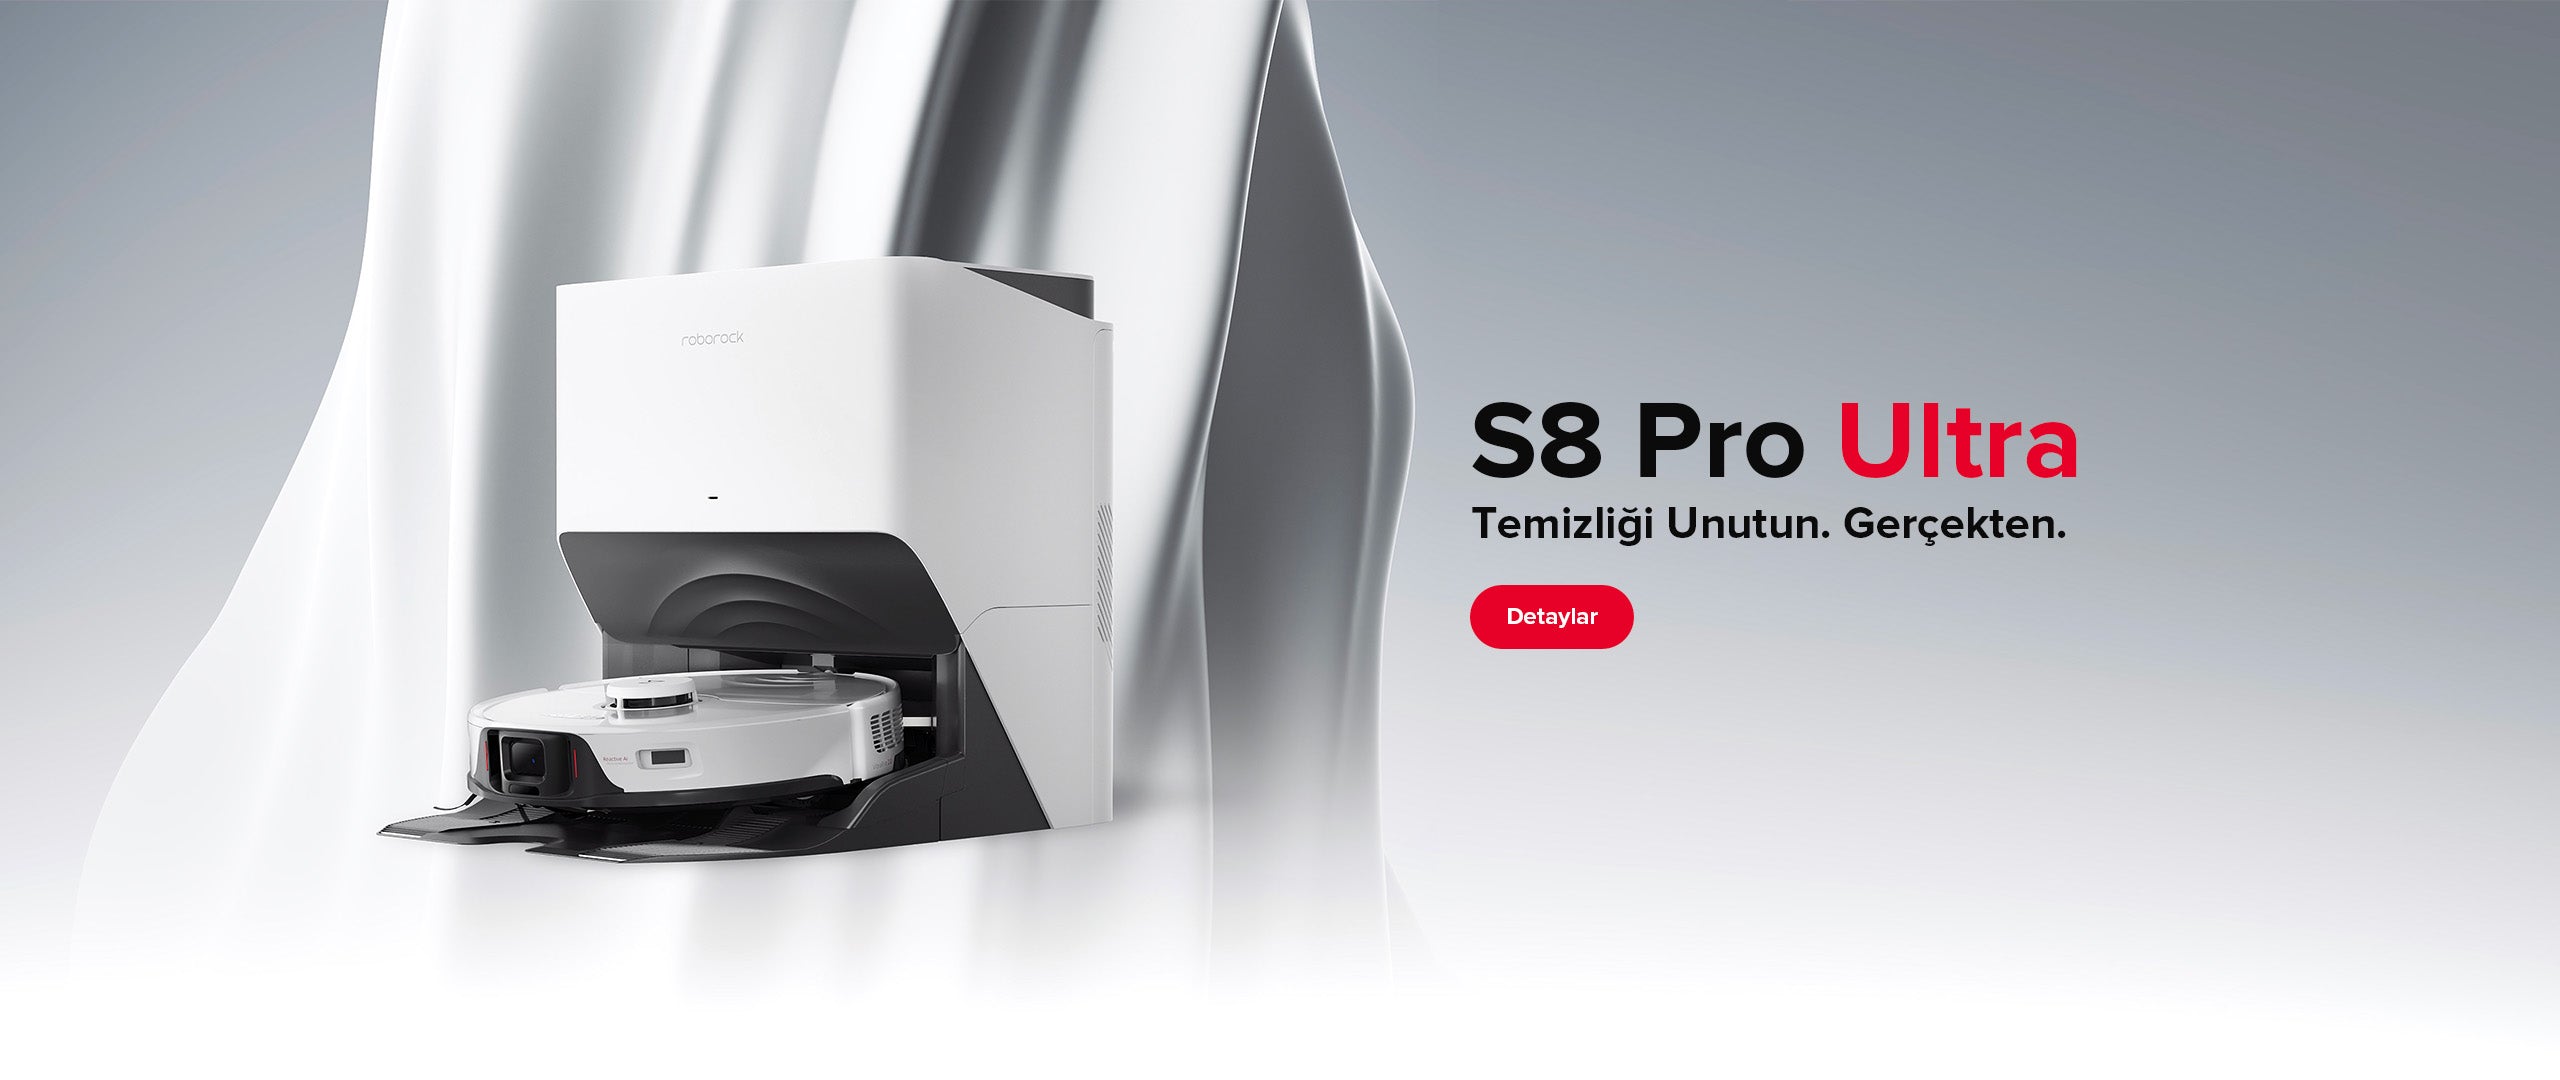 S8 Pro Ultra